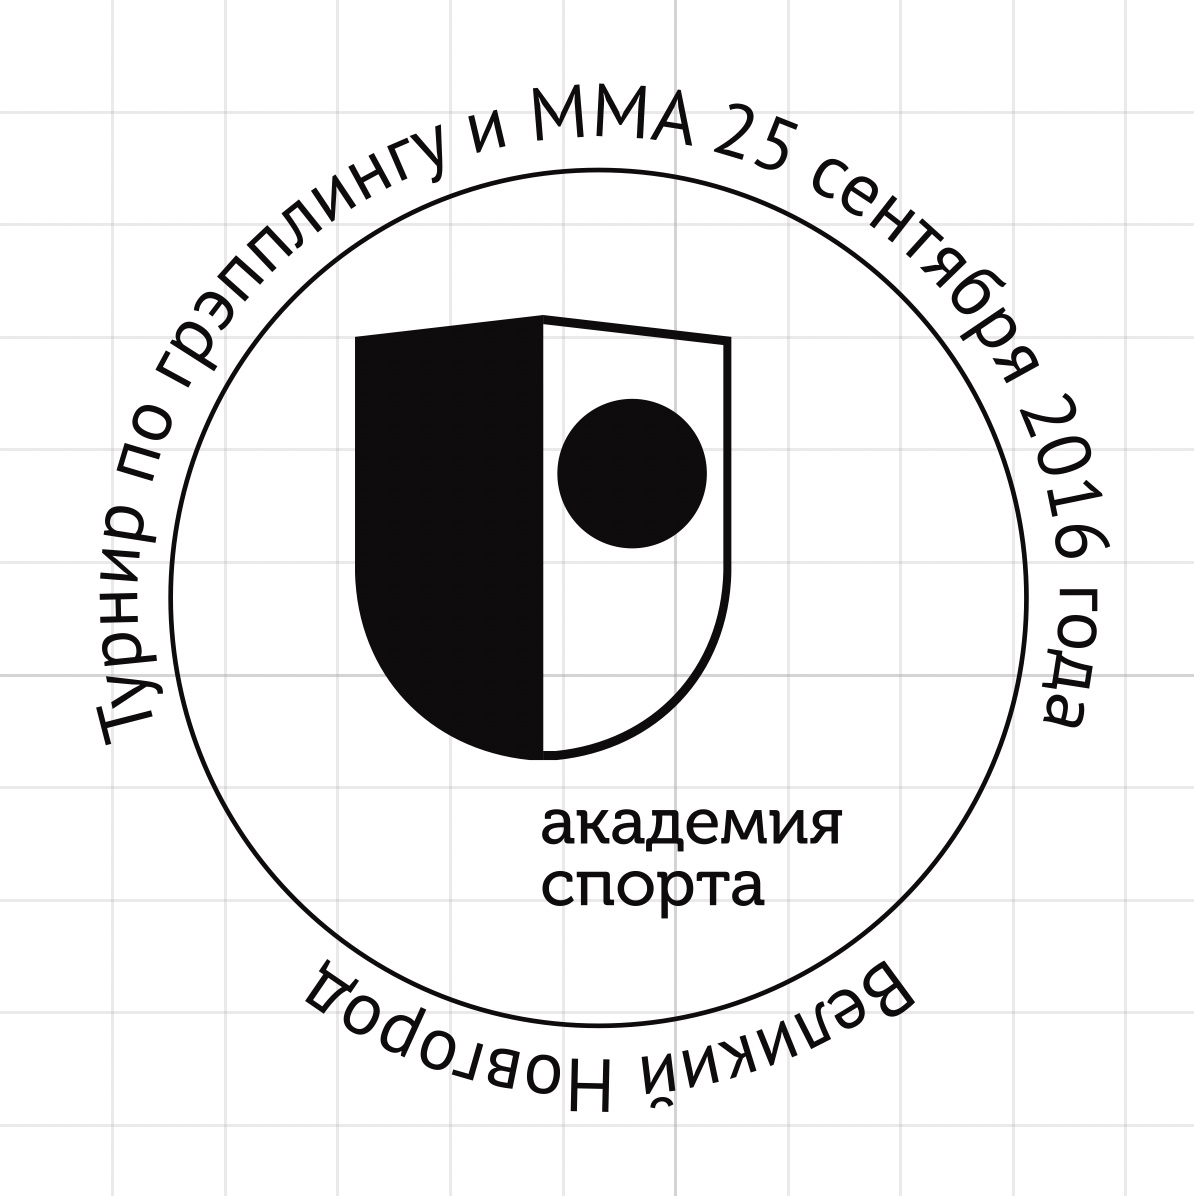 Макет медали с логотипом Tov Team